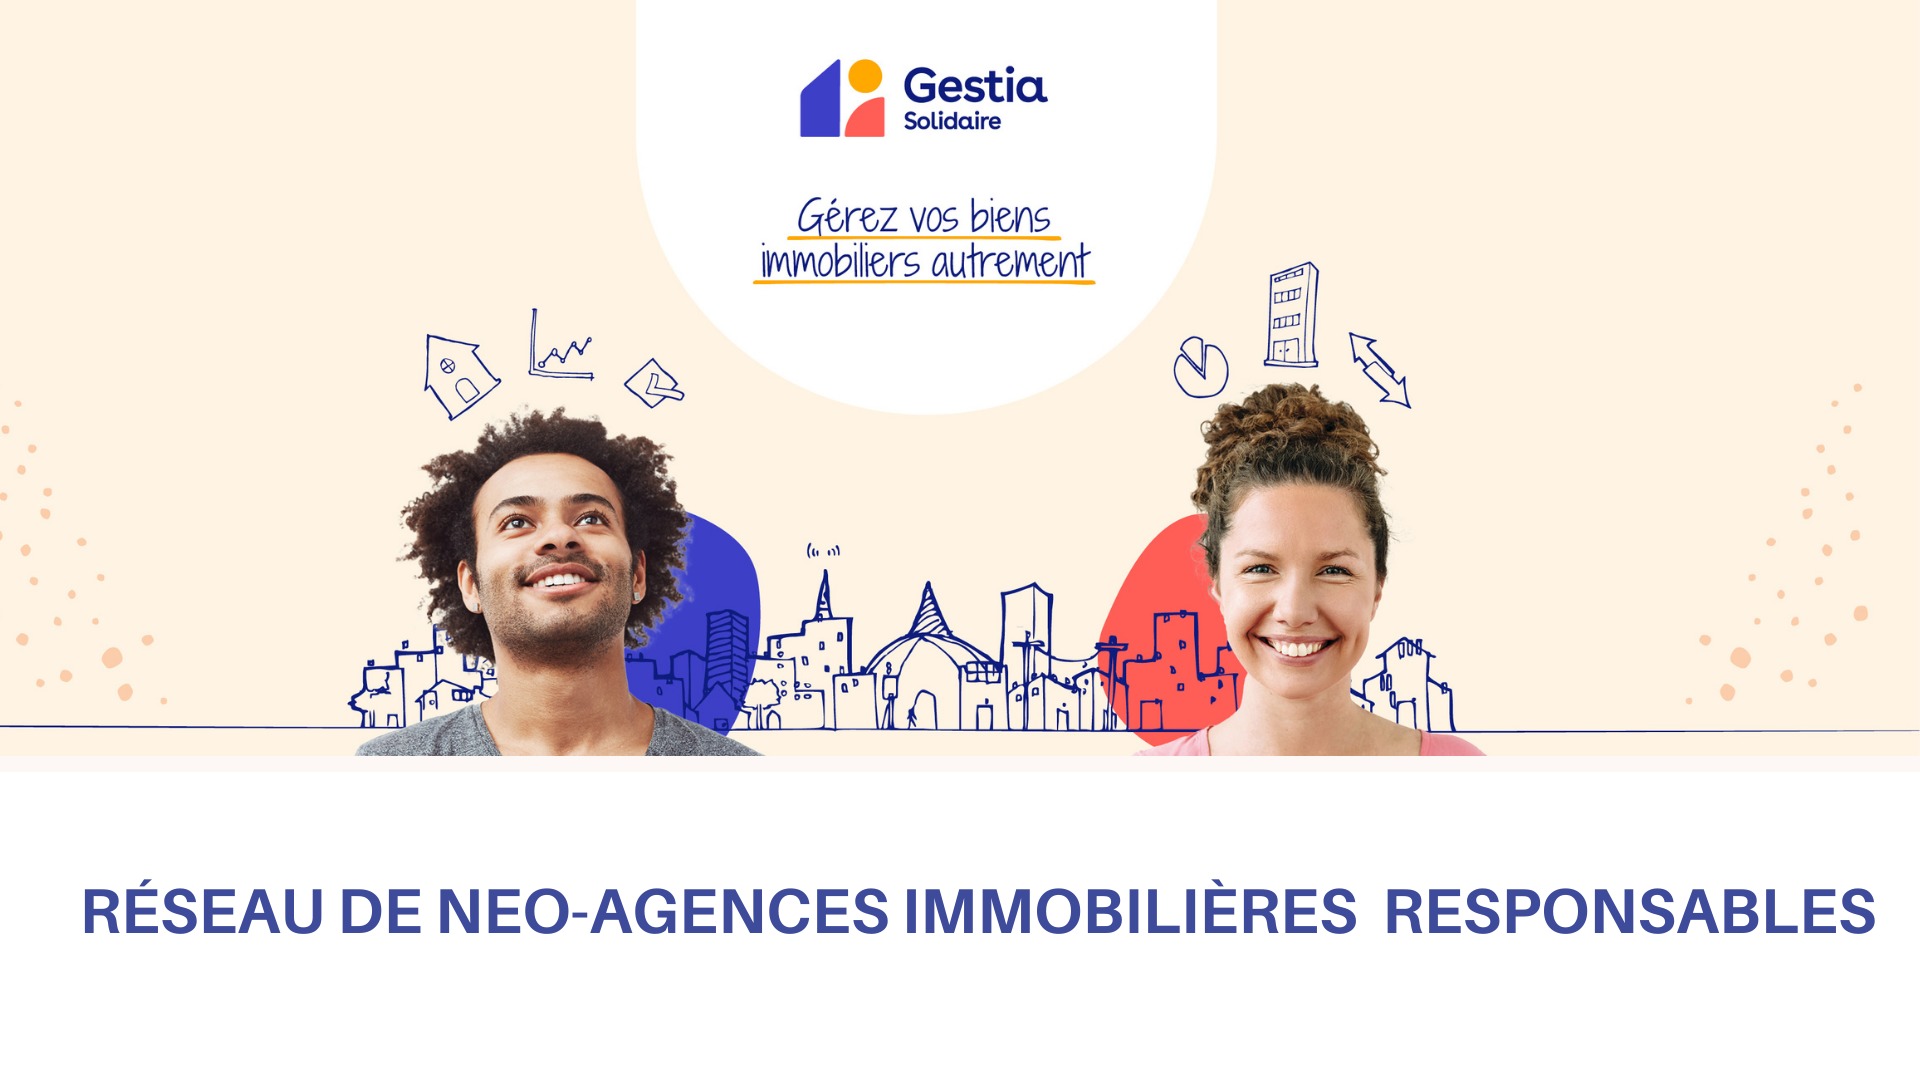 Gestia Solidaire, le réseau de neo-agences immobilières responsables pour gérer vos biens immobiliers autrement.